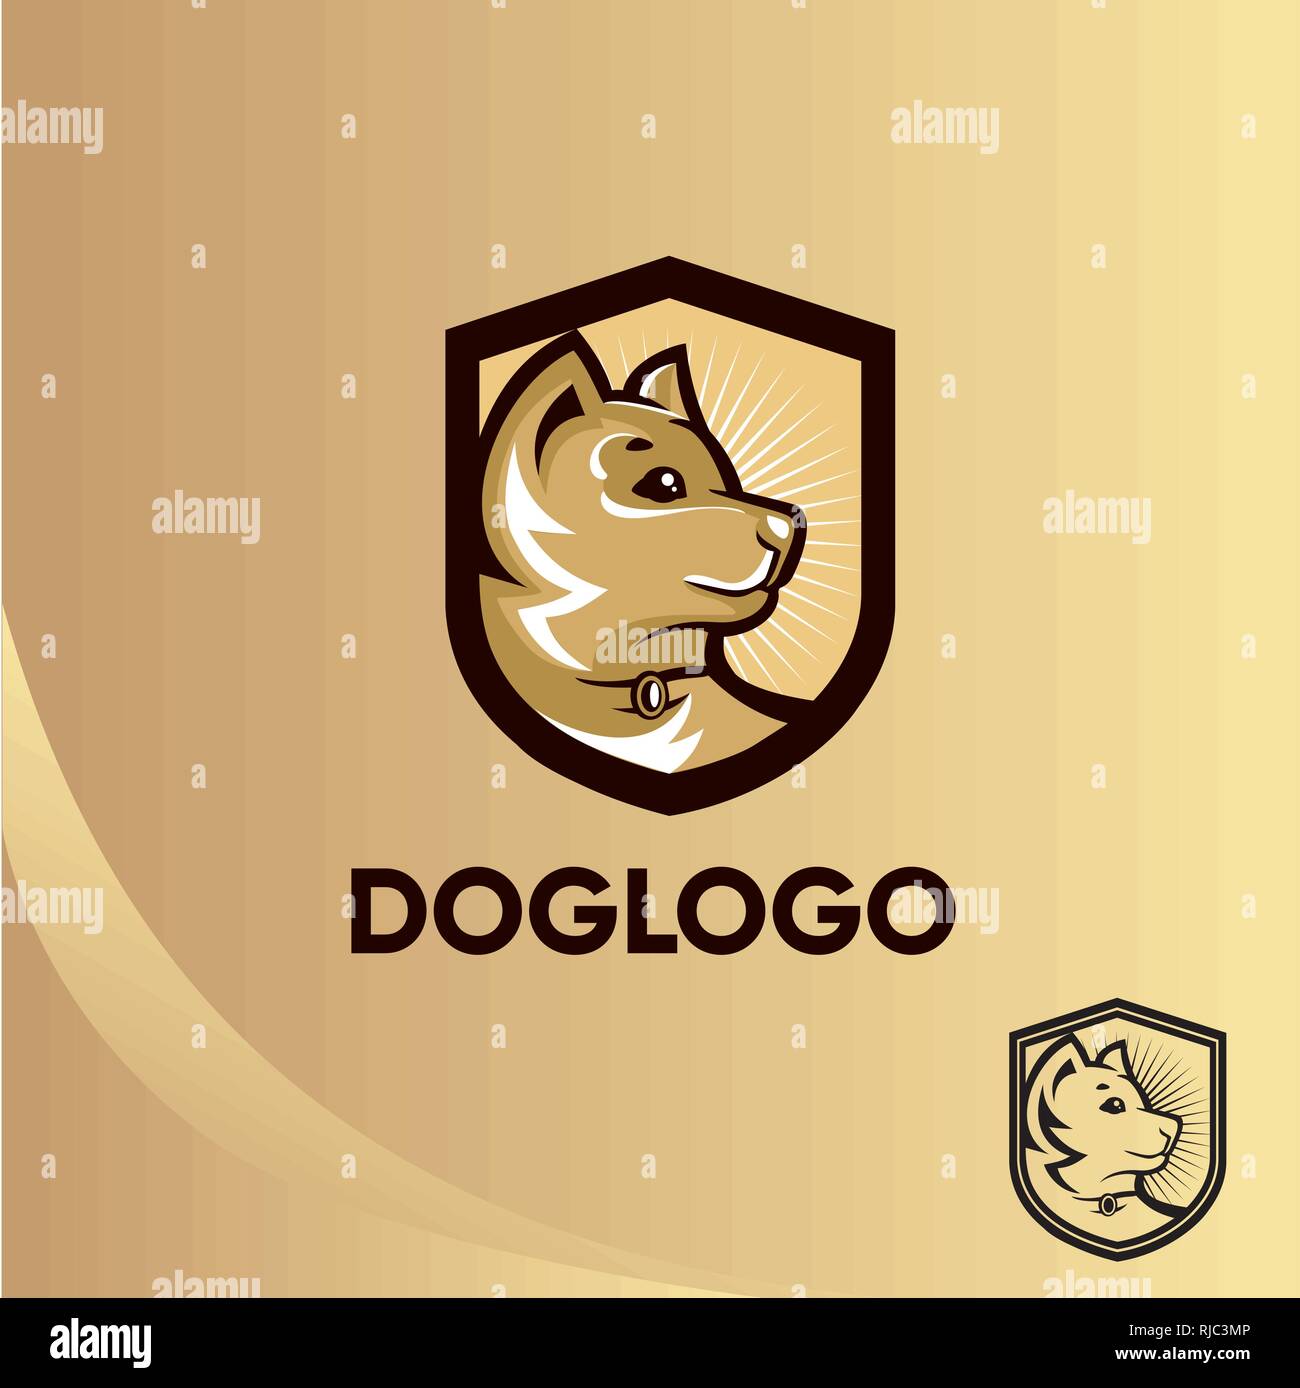 Dog logo template Stock Vector